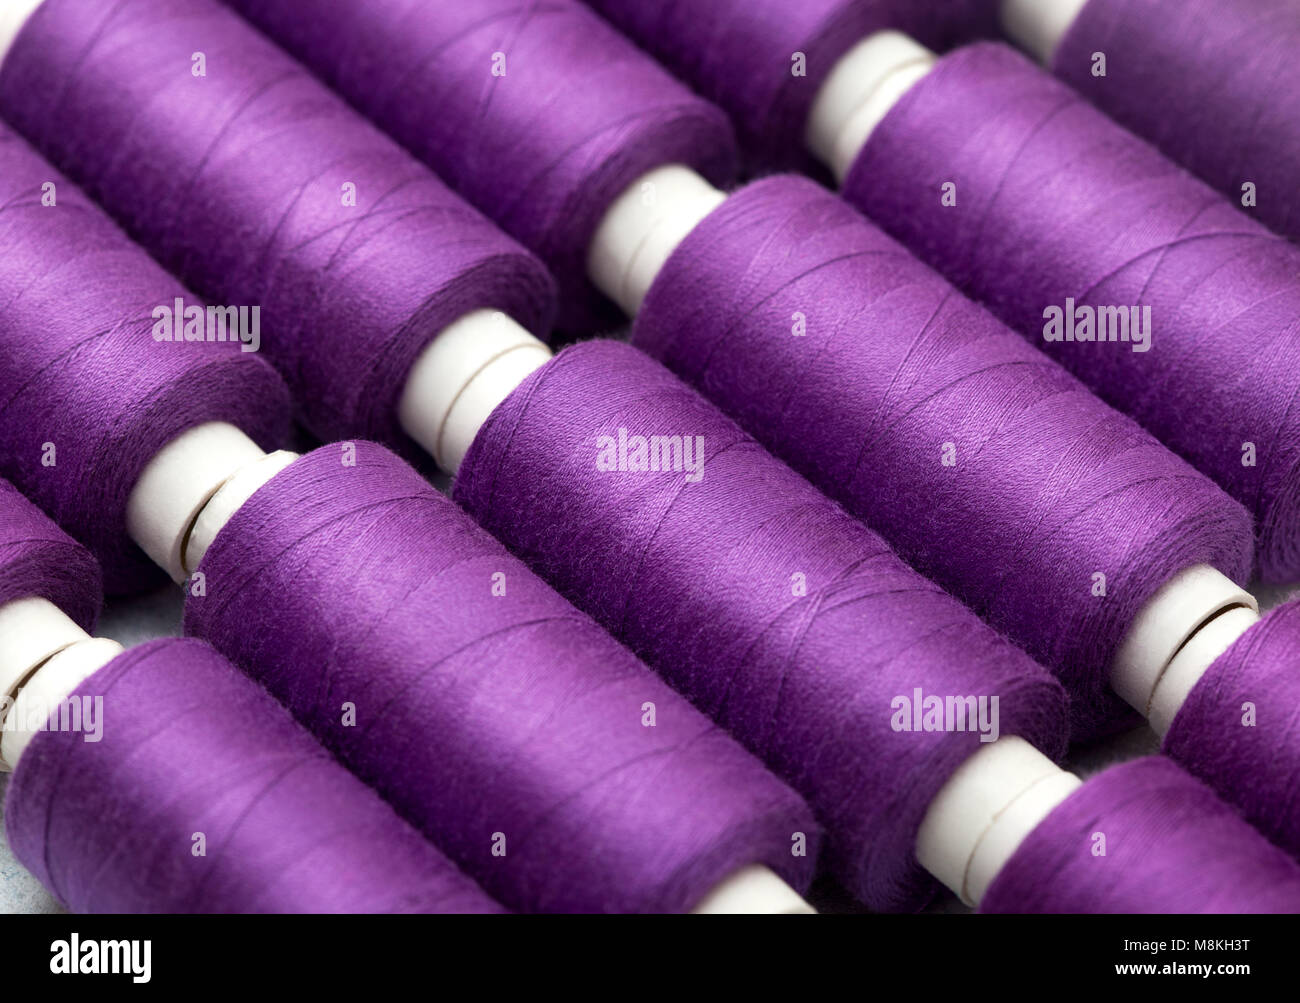 Thread di background steli viola, viola, lilla close-up Foto Stock